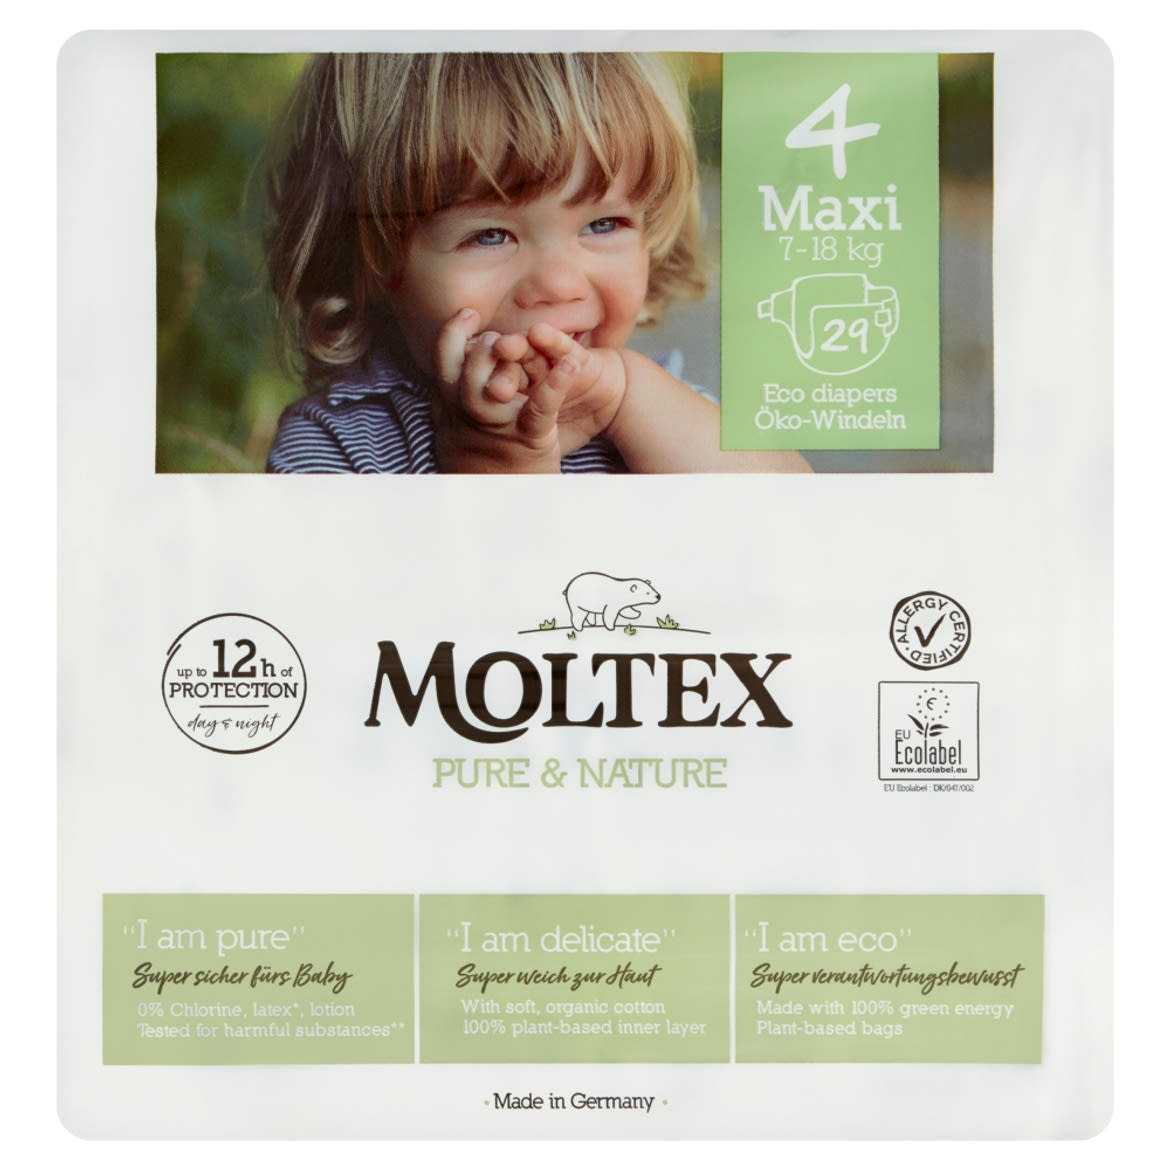 Moltex Pure & Nature ÖKO nadrágpelenka méret: 4 Maxi, 7-18 kg